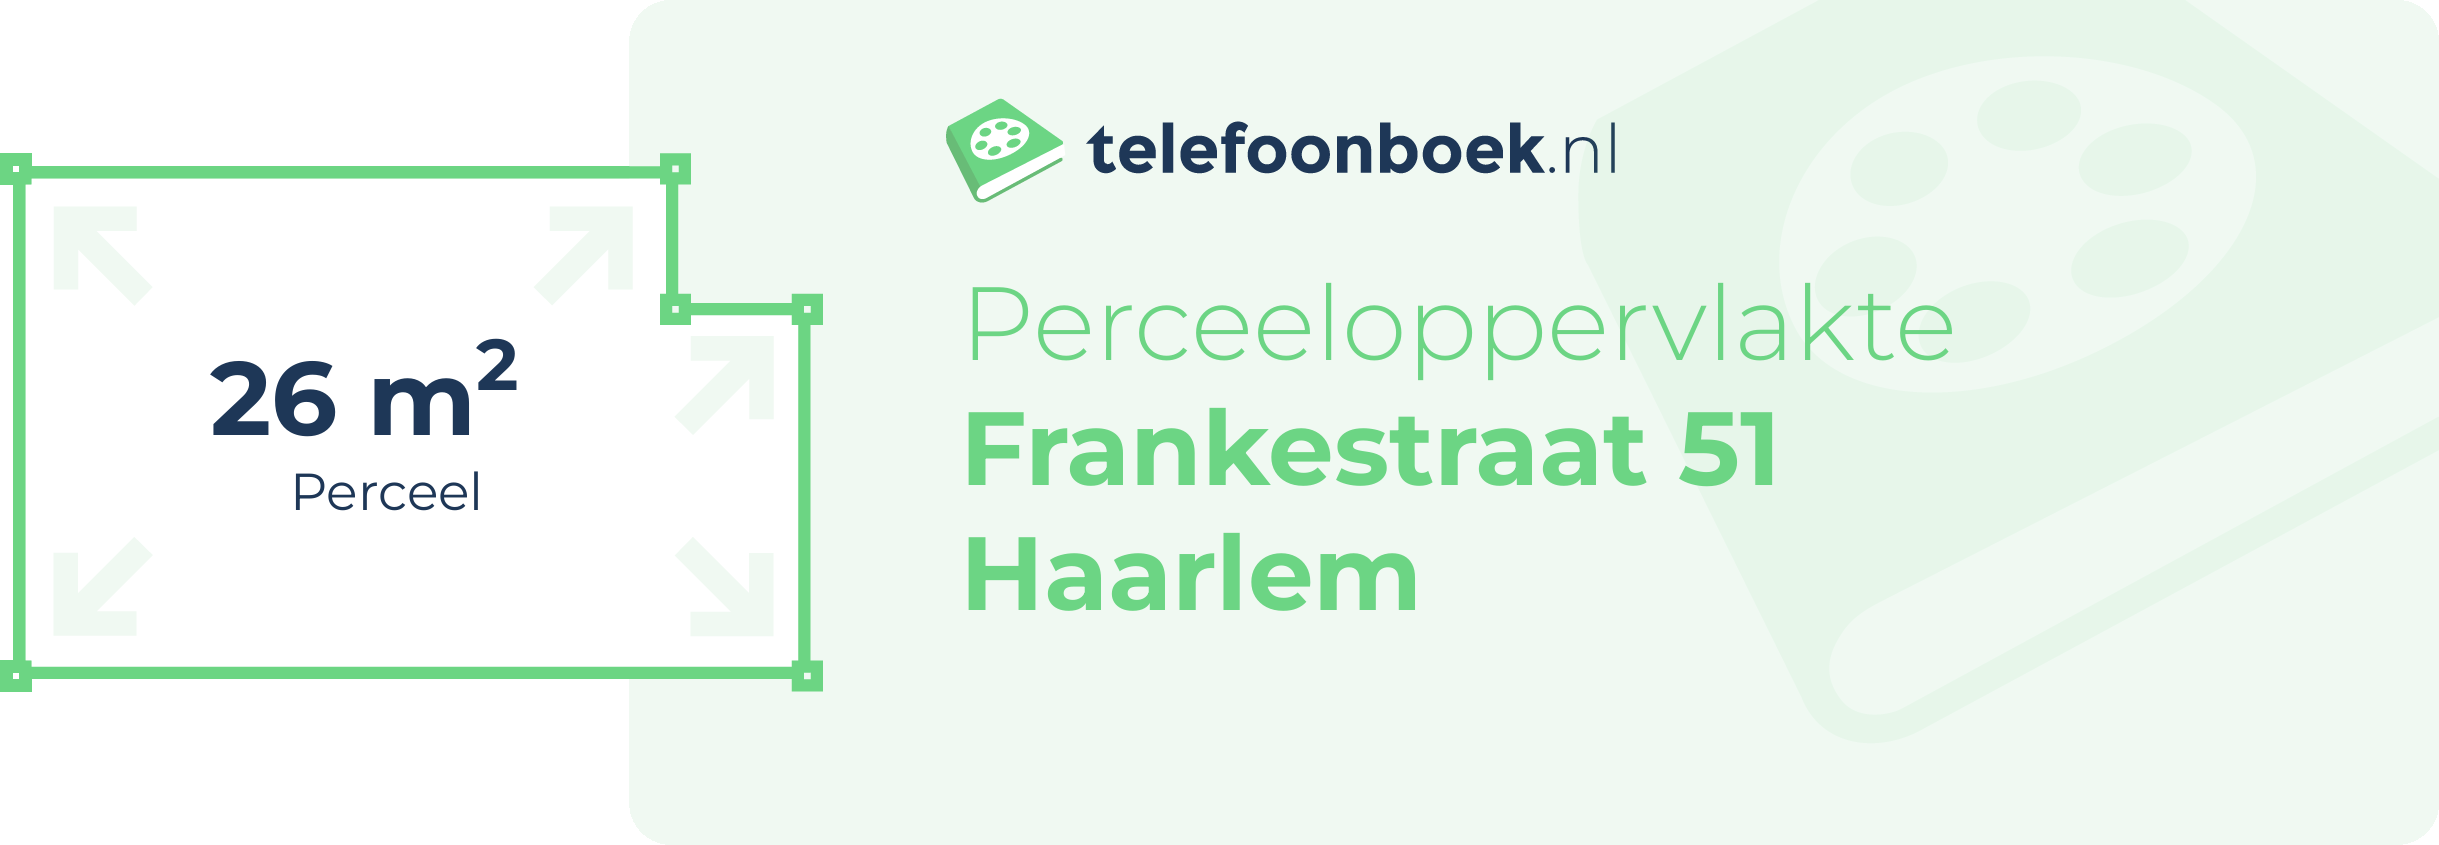 Perceeloppervlakte Frankestraat 51 Haarlem